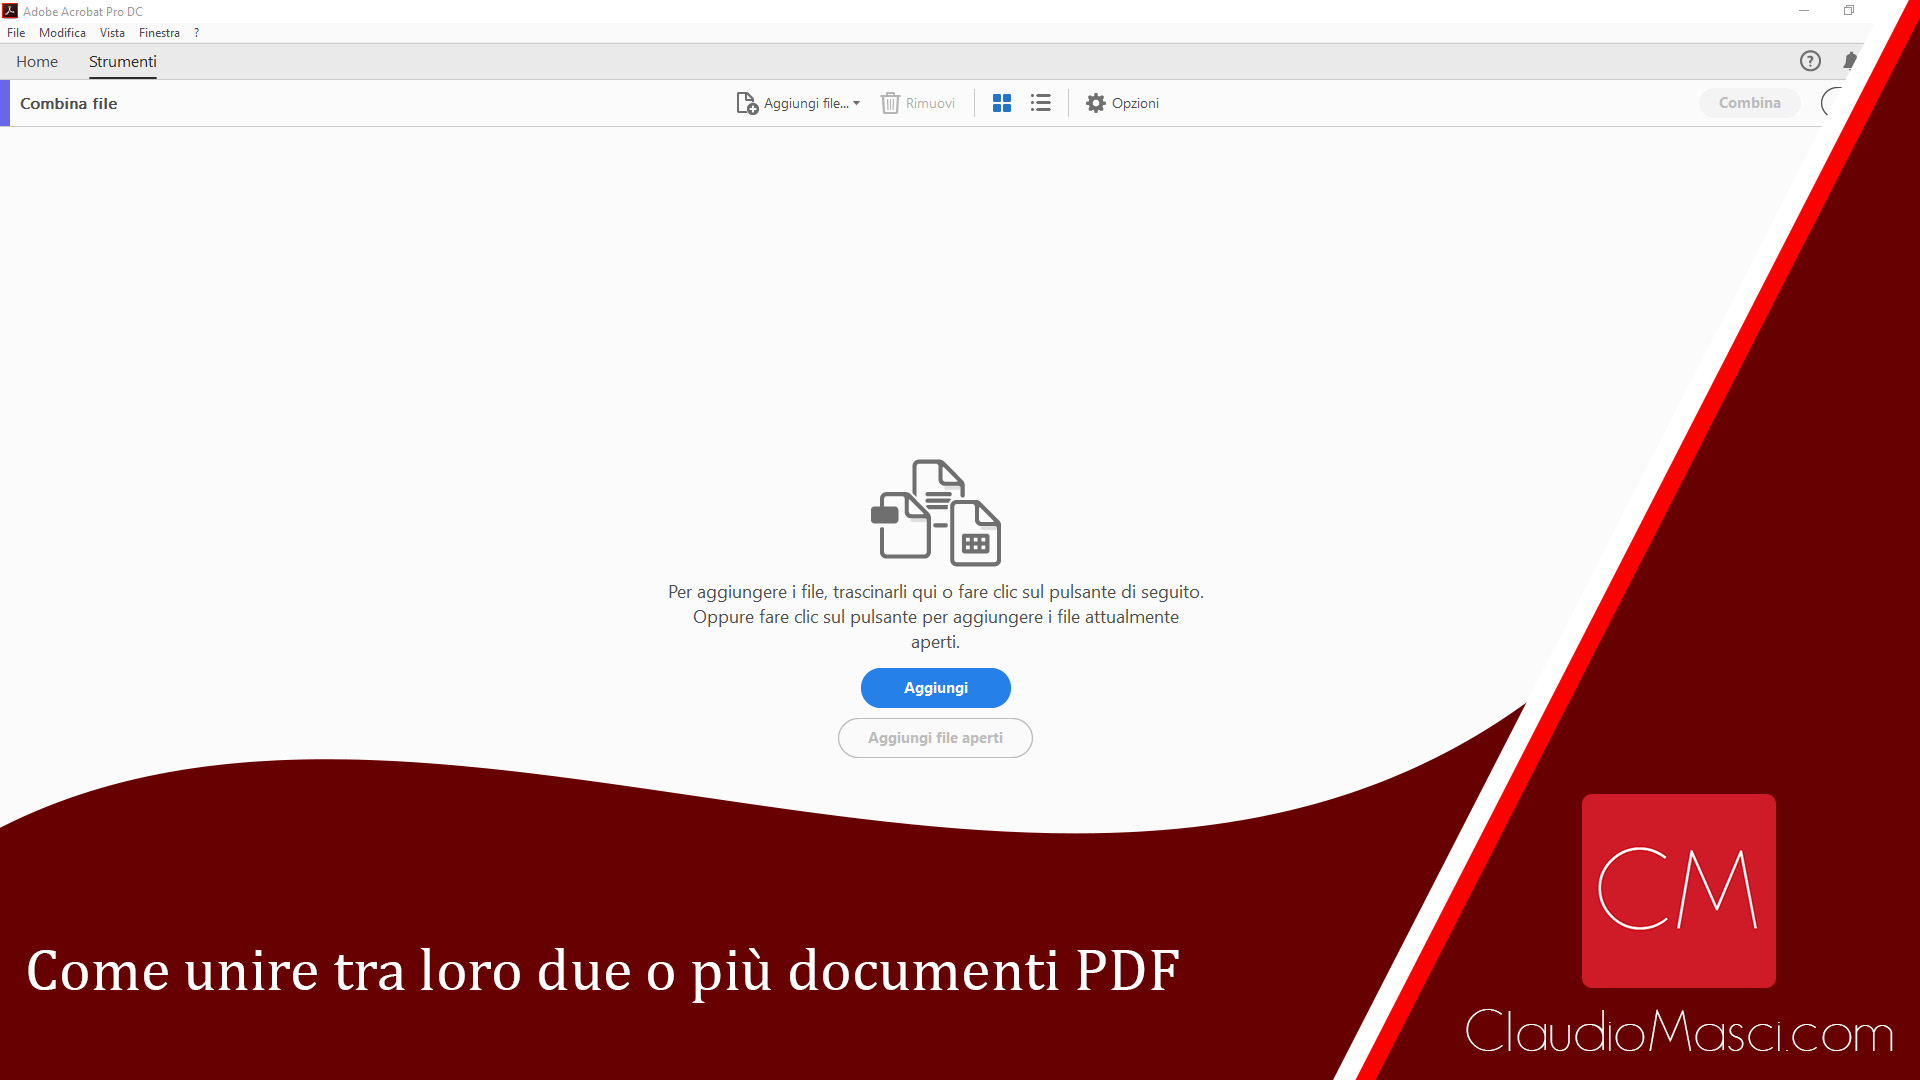 Come unire tra loro due o più documenti PDF